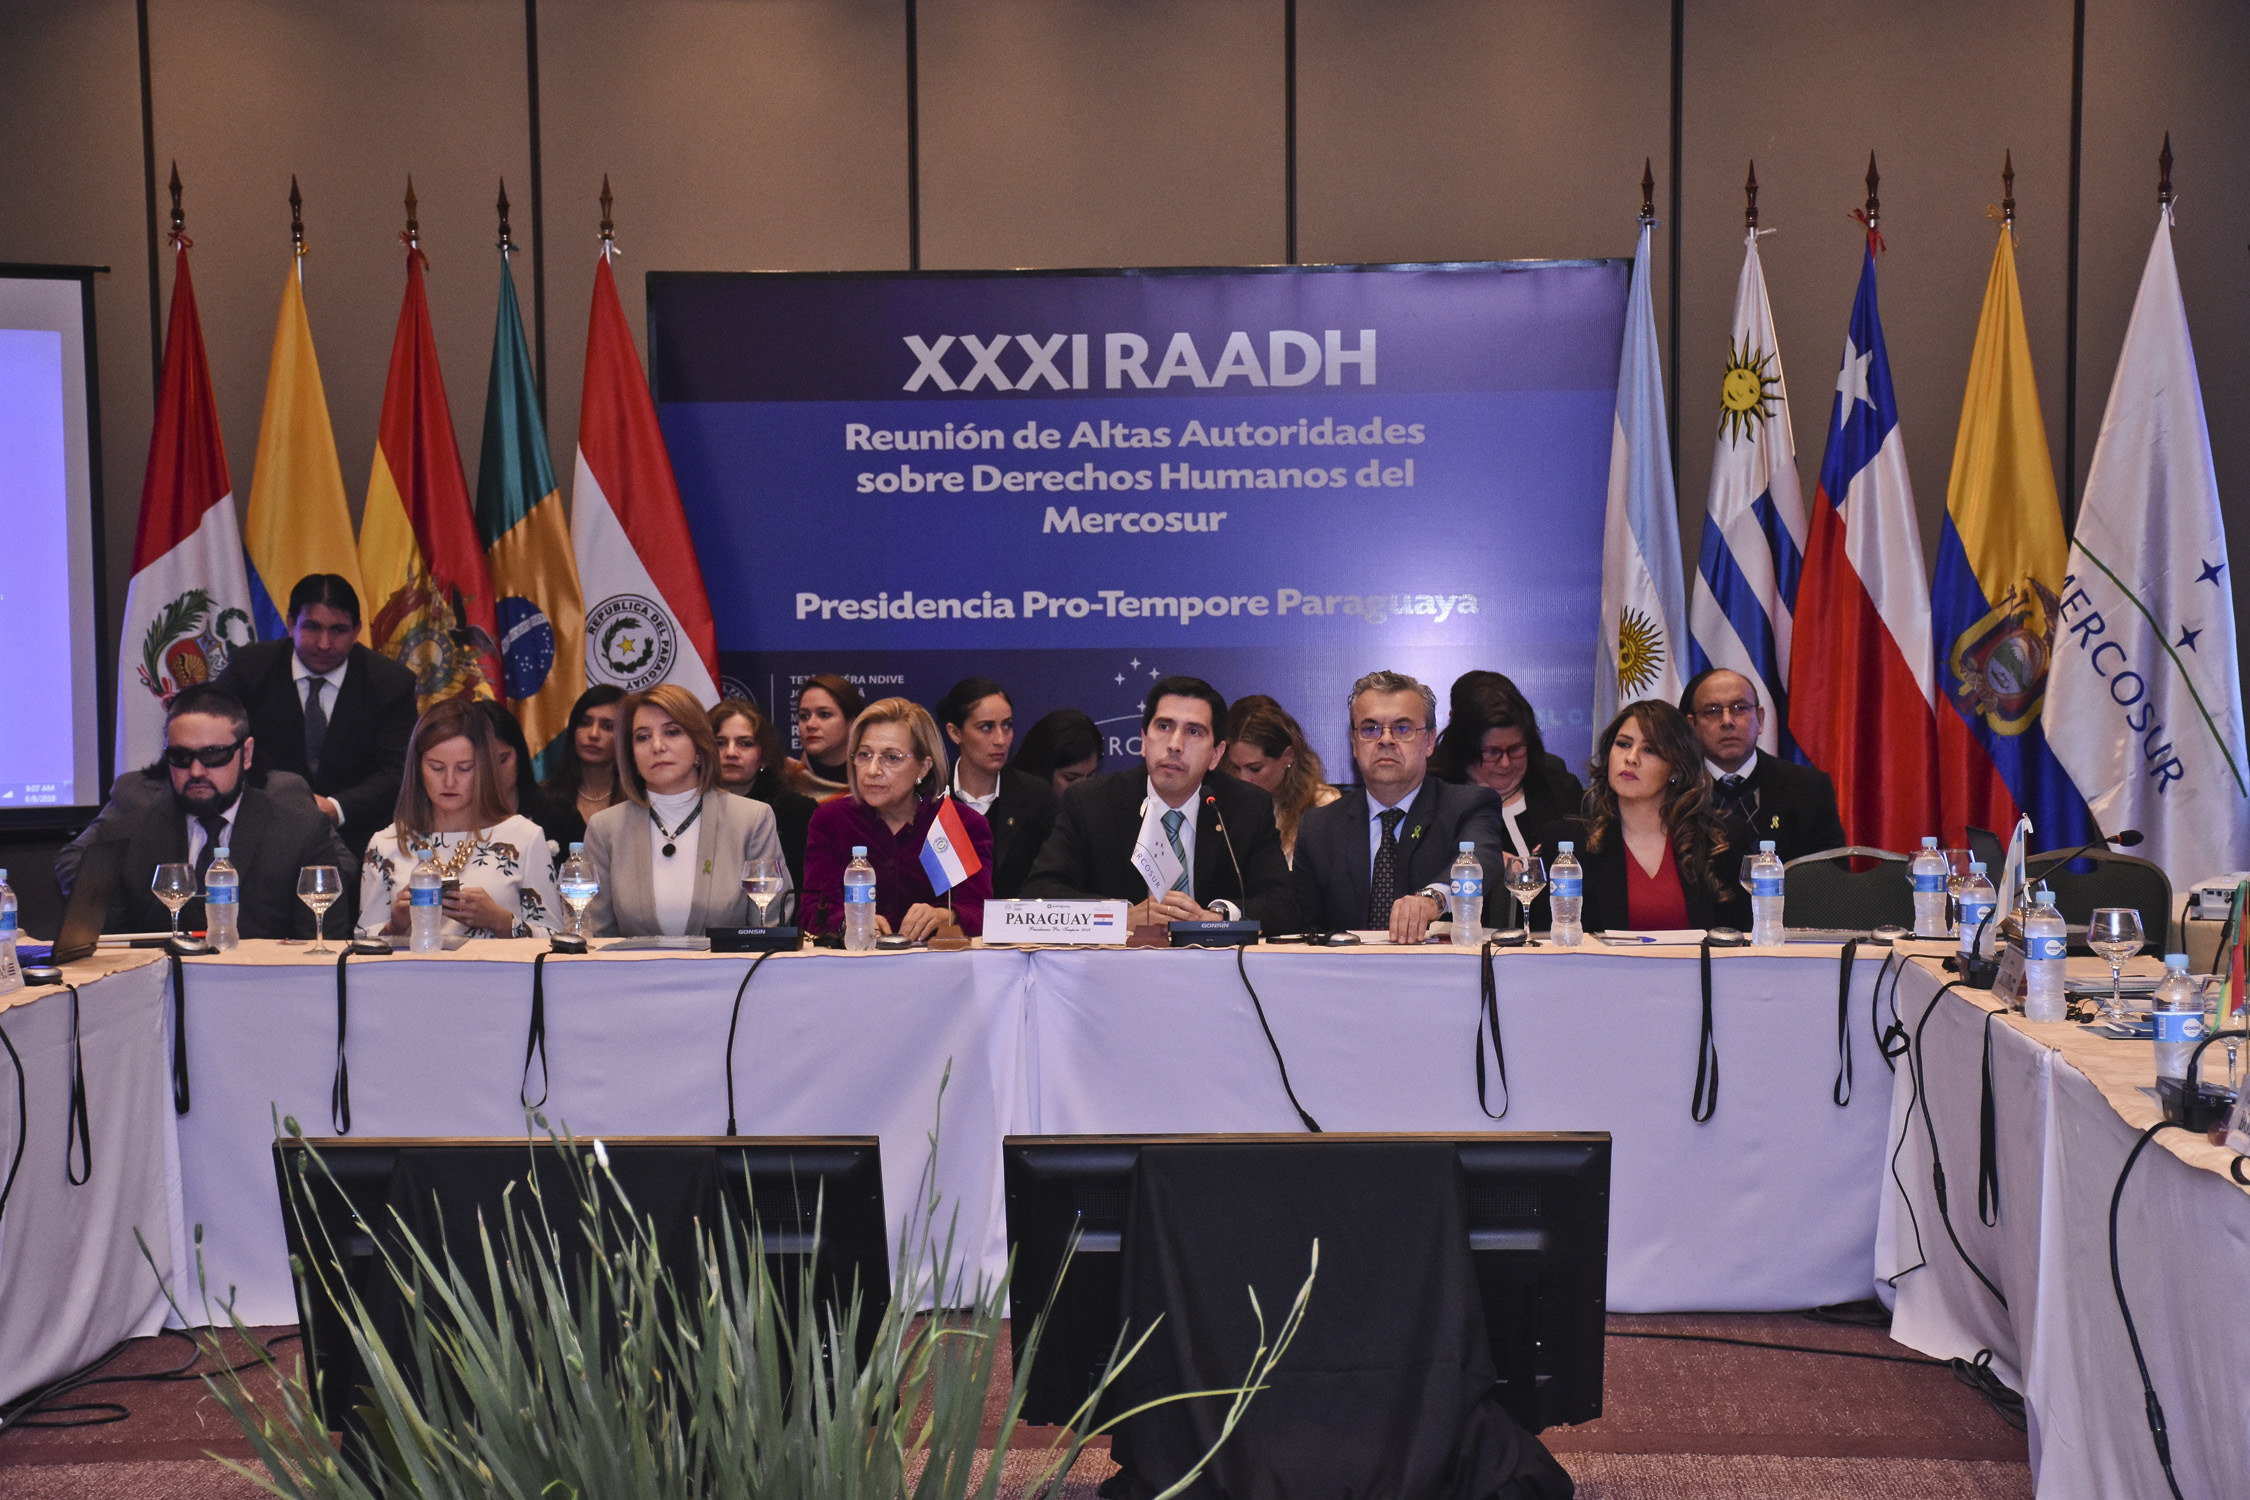 Viceministro de RR.EE. destaca impulso de rostro humano del Mercosur en inauguración de la plenaria de la XXXI Reunión de Altas Autoridades en DD.HH.